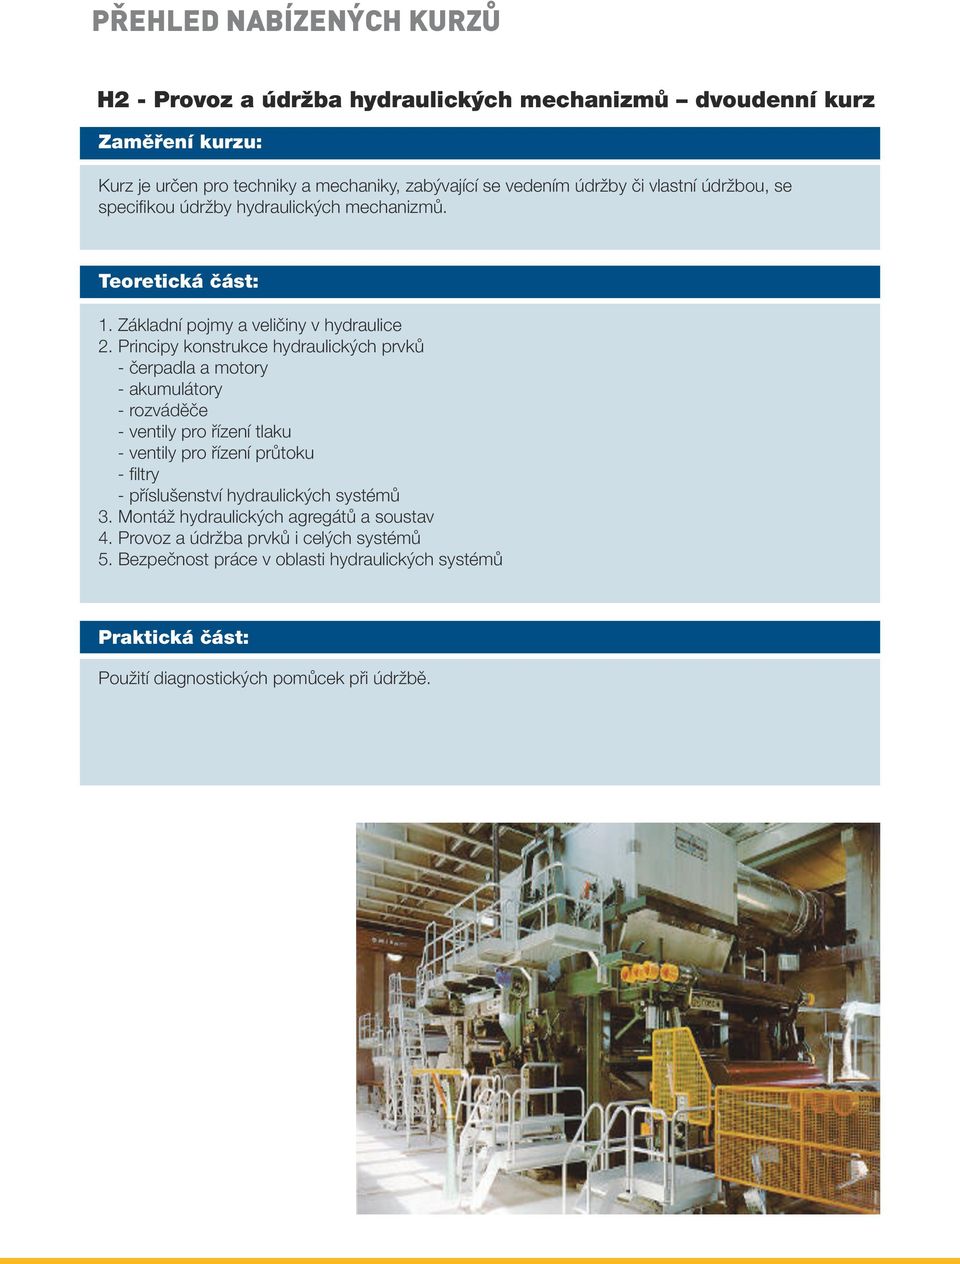 Principy konstrukce hydraulických prvků - čerpadla a motory - akumulátory - rozváděče - ventily pro řízení tlaku - ventily pro řízení průtoku - filtry -